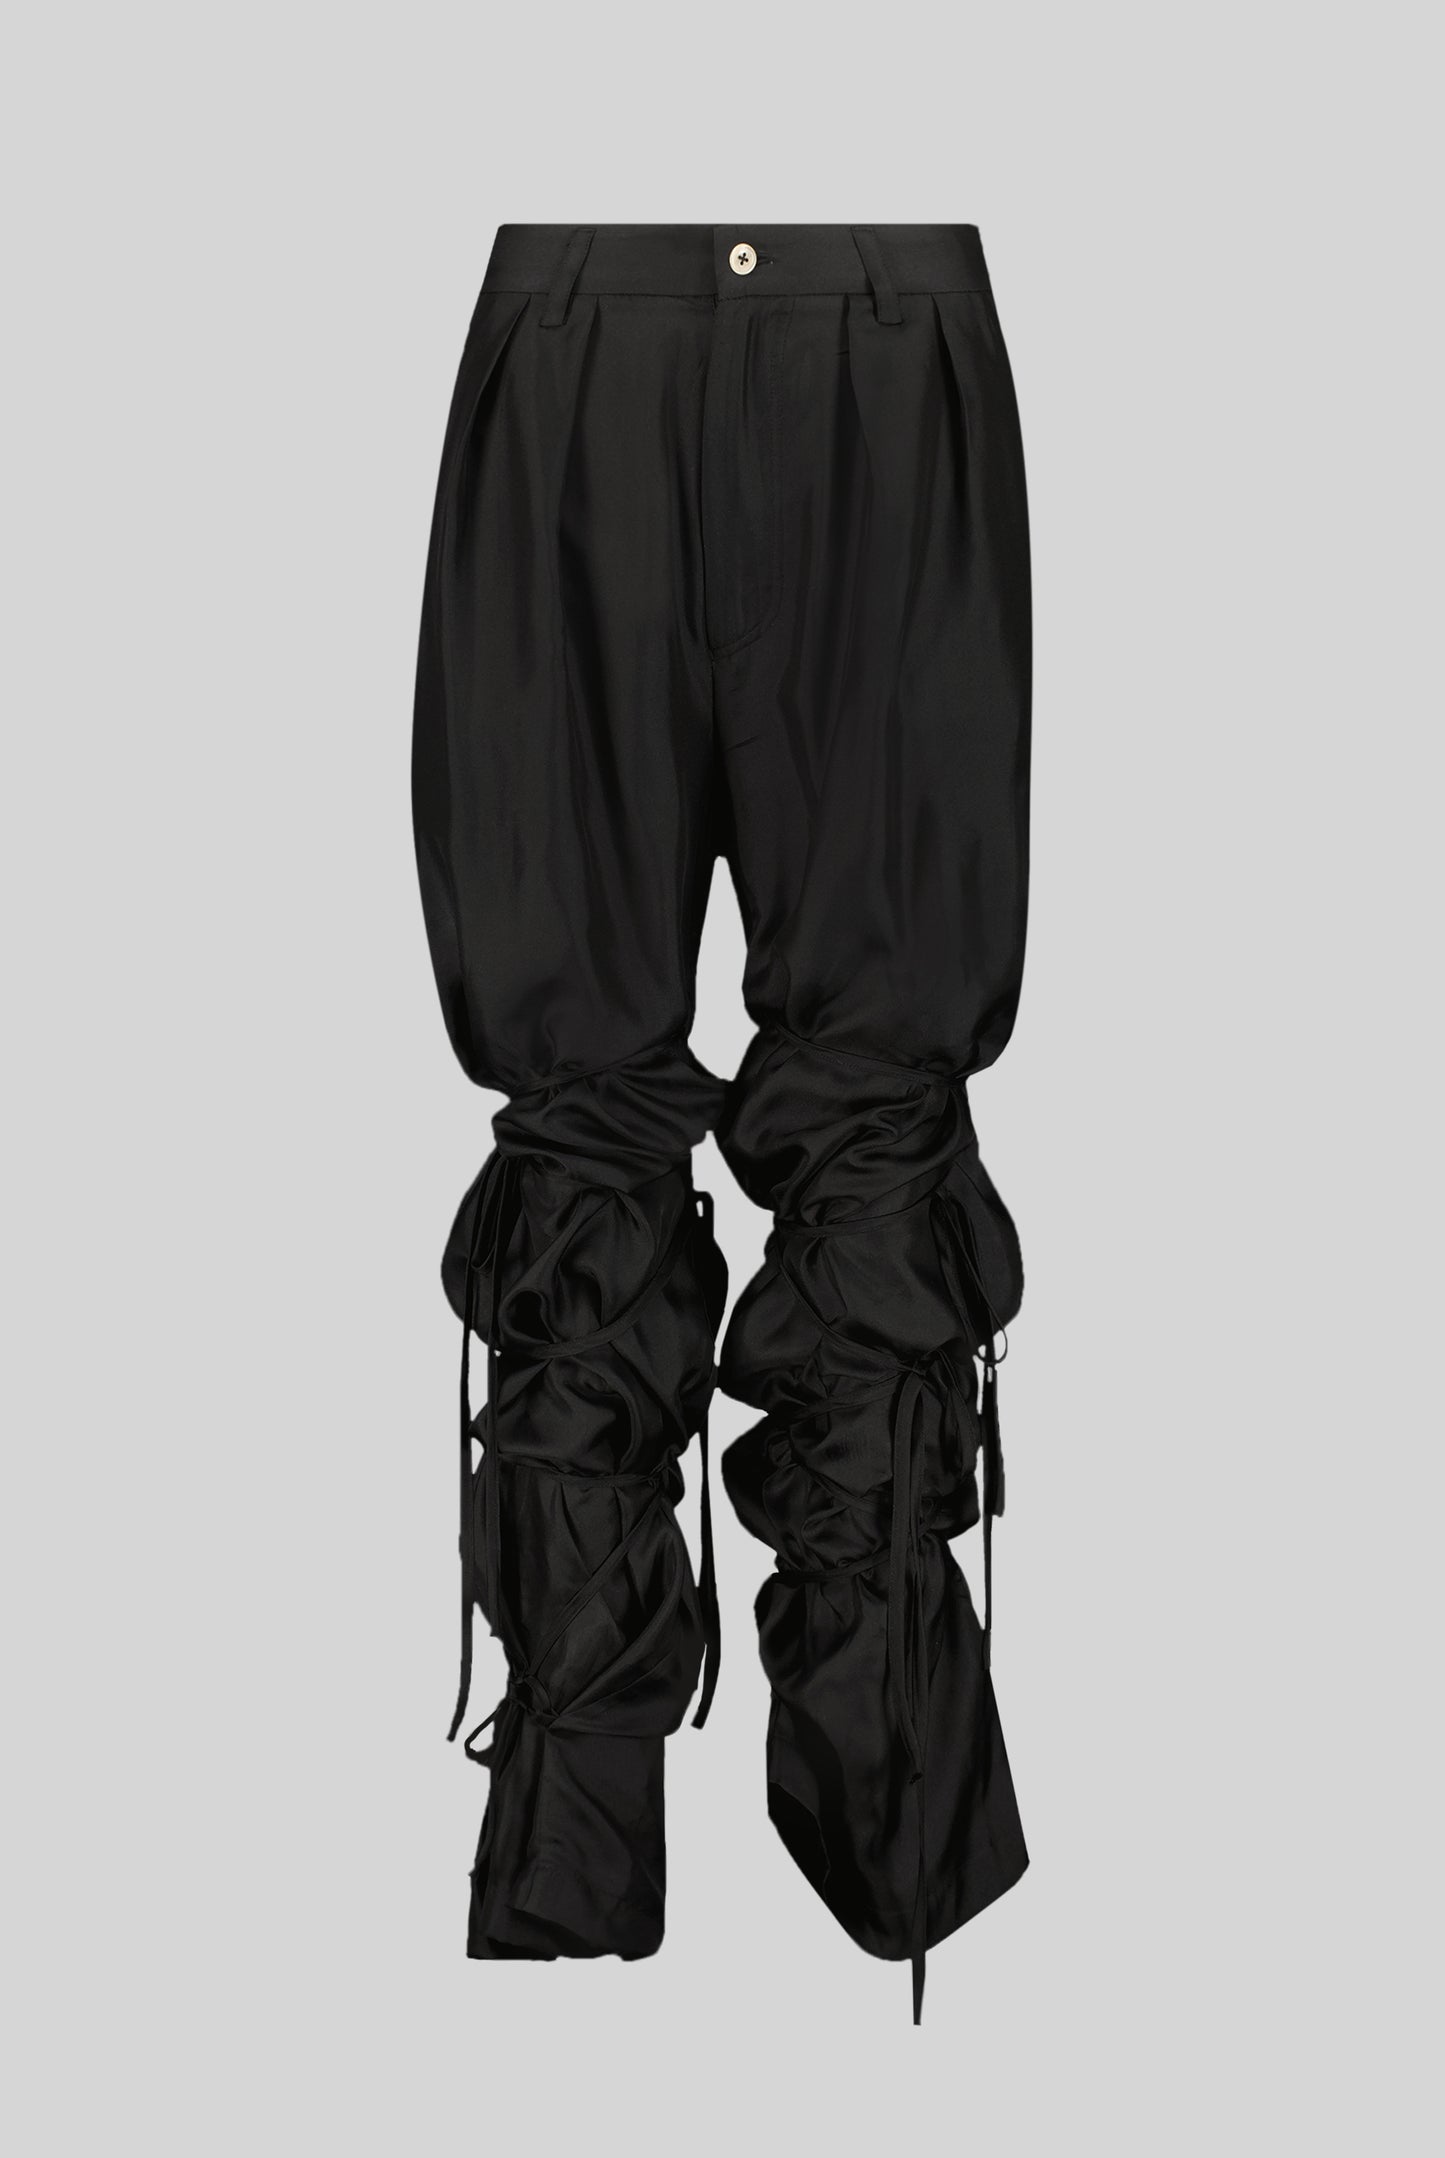 Pepper Trousers in Black Silk